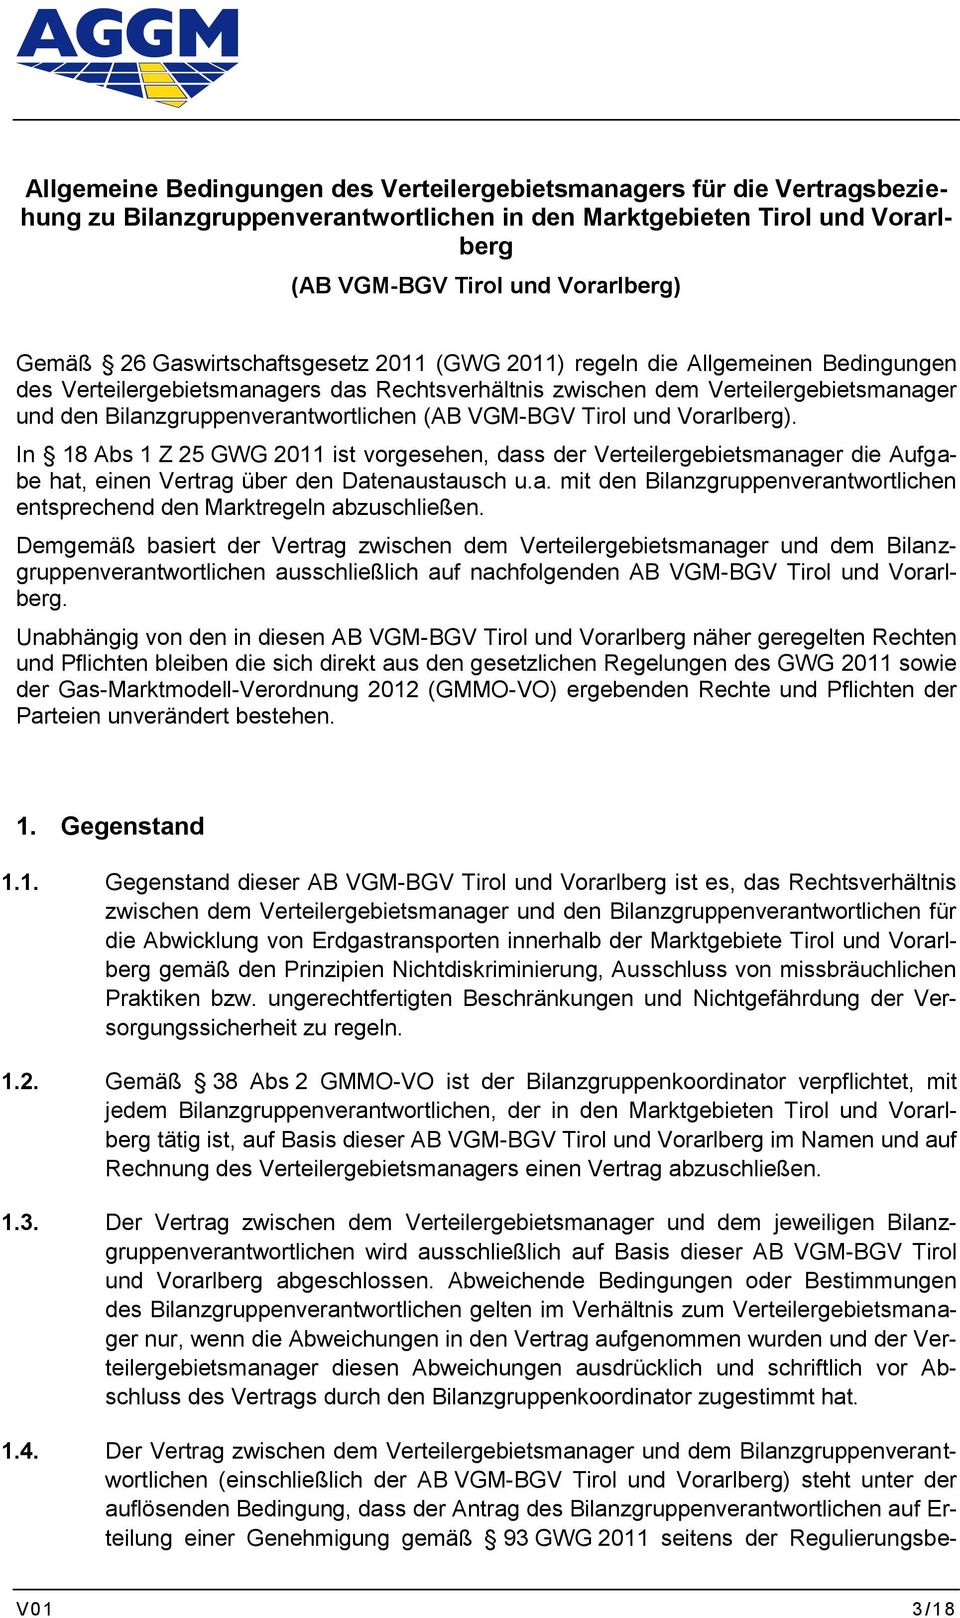 (AB VGM-BGV Tirol und Vorarlberg). In 18 Abs 1 Z 25 GWG 2011 ist vorgesehen, dass der Verteilergebietsmanager die Aufgabe hat, einen Vertrag über den Datenaustausch u.a. mit den Bilanzgruppenverantwortlichen entsprechend den Marktregeln abzuschließen.